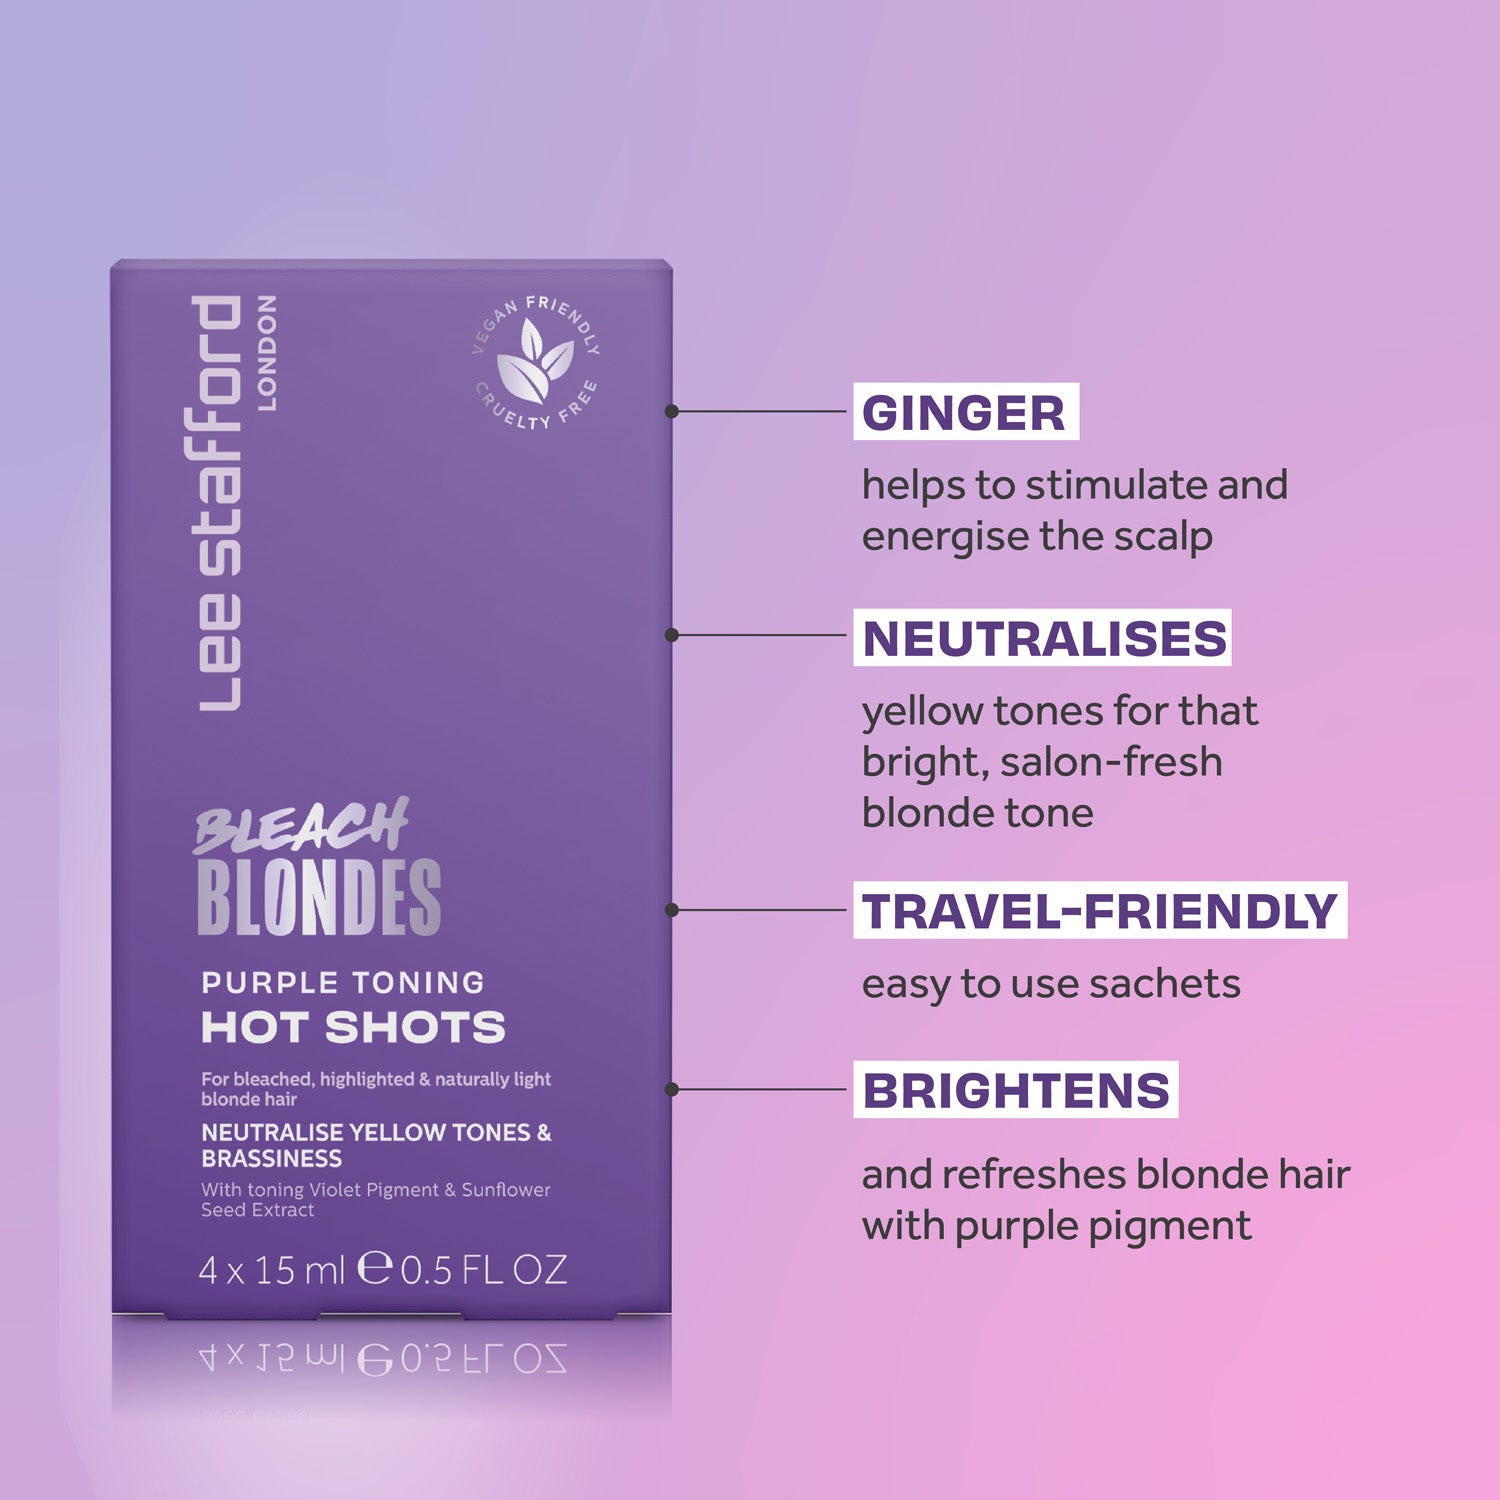 Тонирующие фиолетовые ампулы для осветленных волос Lee Stafford Bleach Blondes Purple Toning Hot Shots